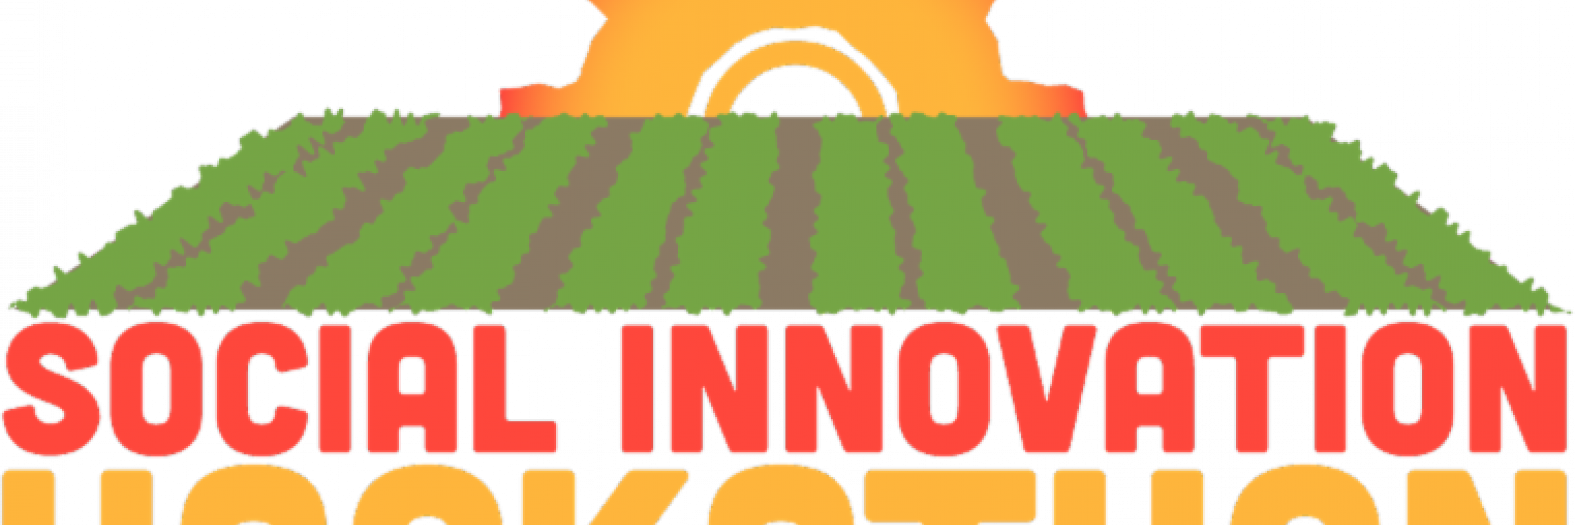 social-innovation-hackathon-banner_0.png